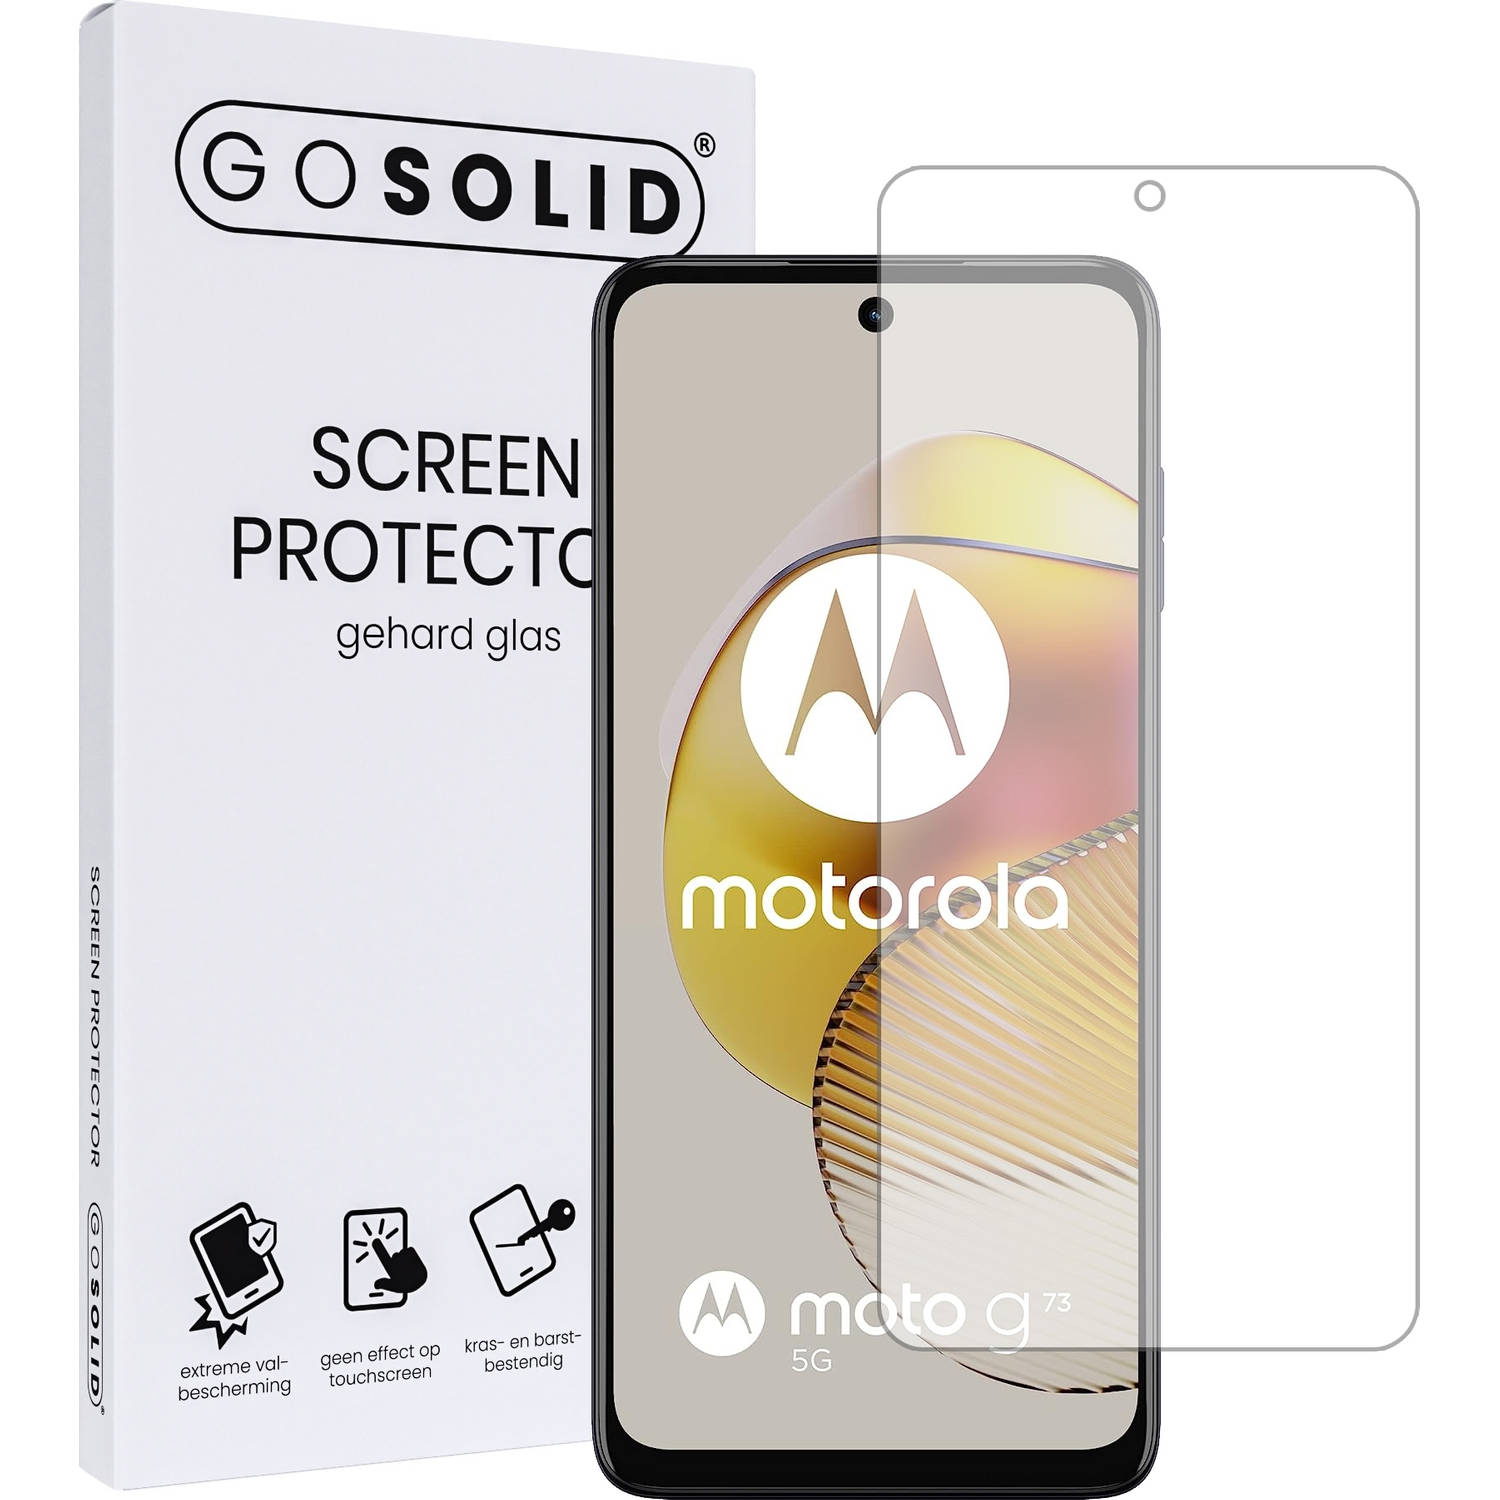 GO SOLID! Screenprotector voor Motorola Moto G73 5G gehard glas